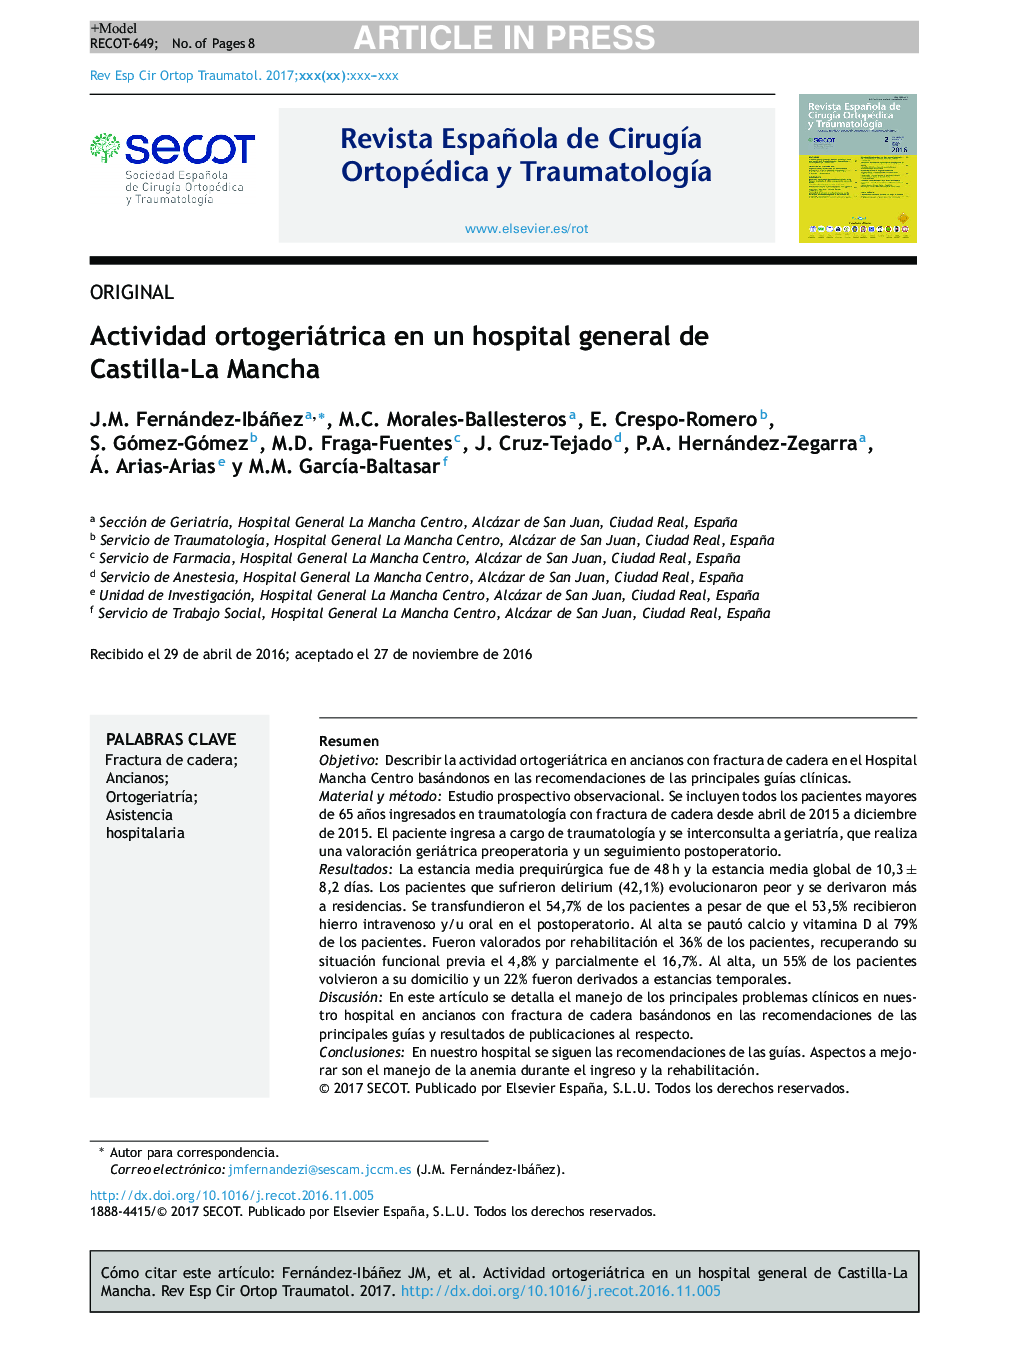 Actividad ortogeriátrica en un hospital general de Castilla-La Mancha